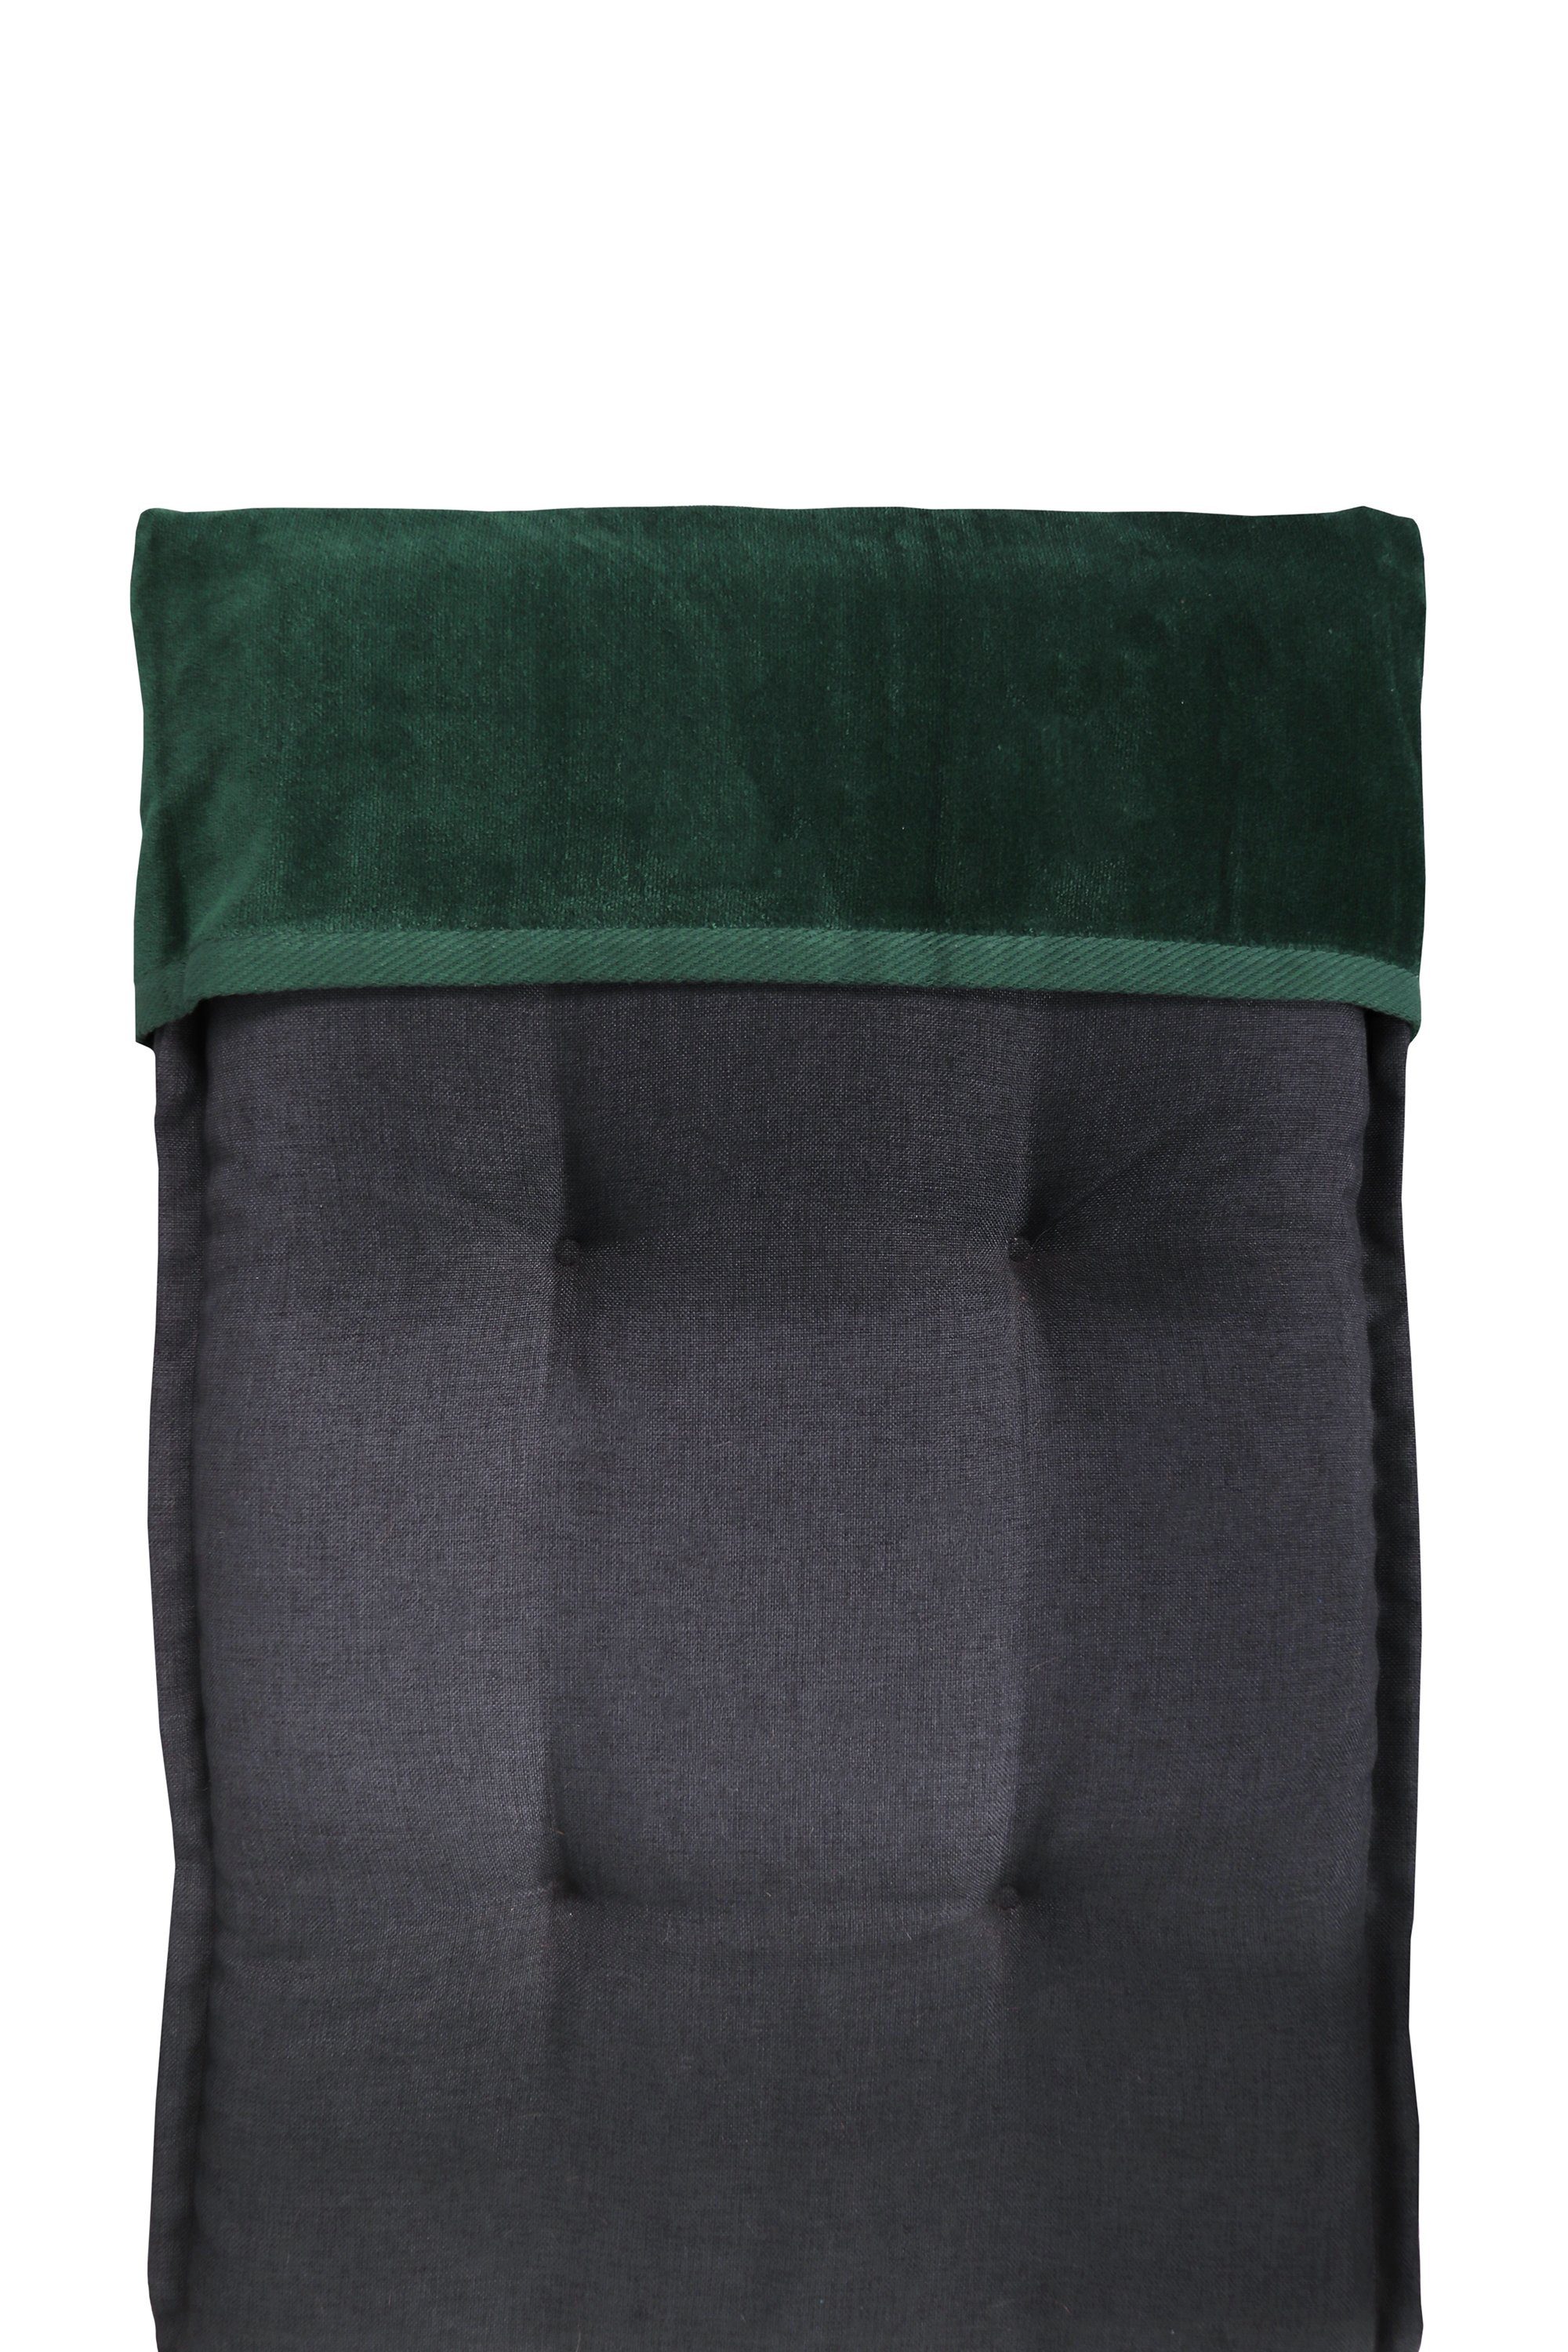 jilda-tex Stuhlauflage als erhältlich Liegenauflage Grün Relax, und Liegen-